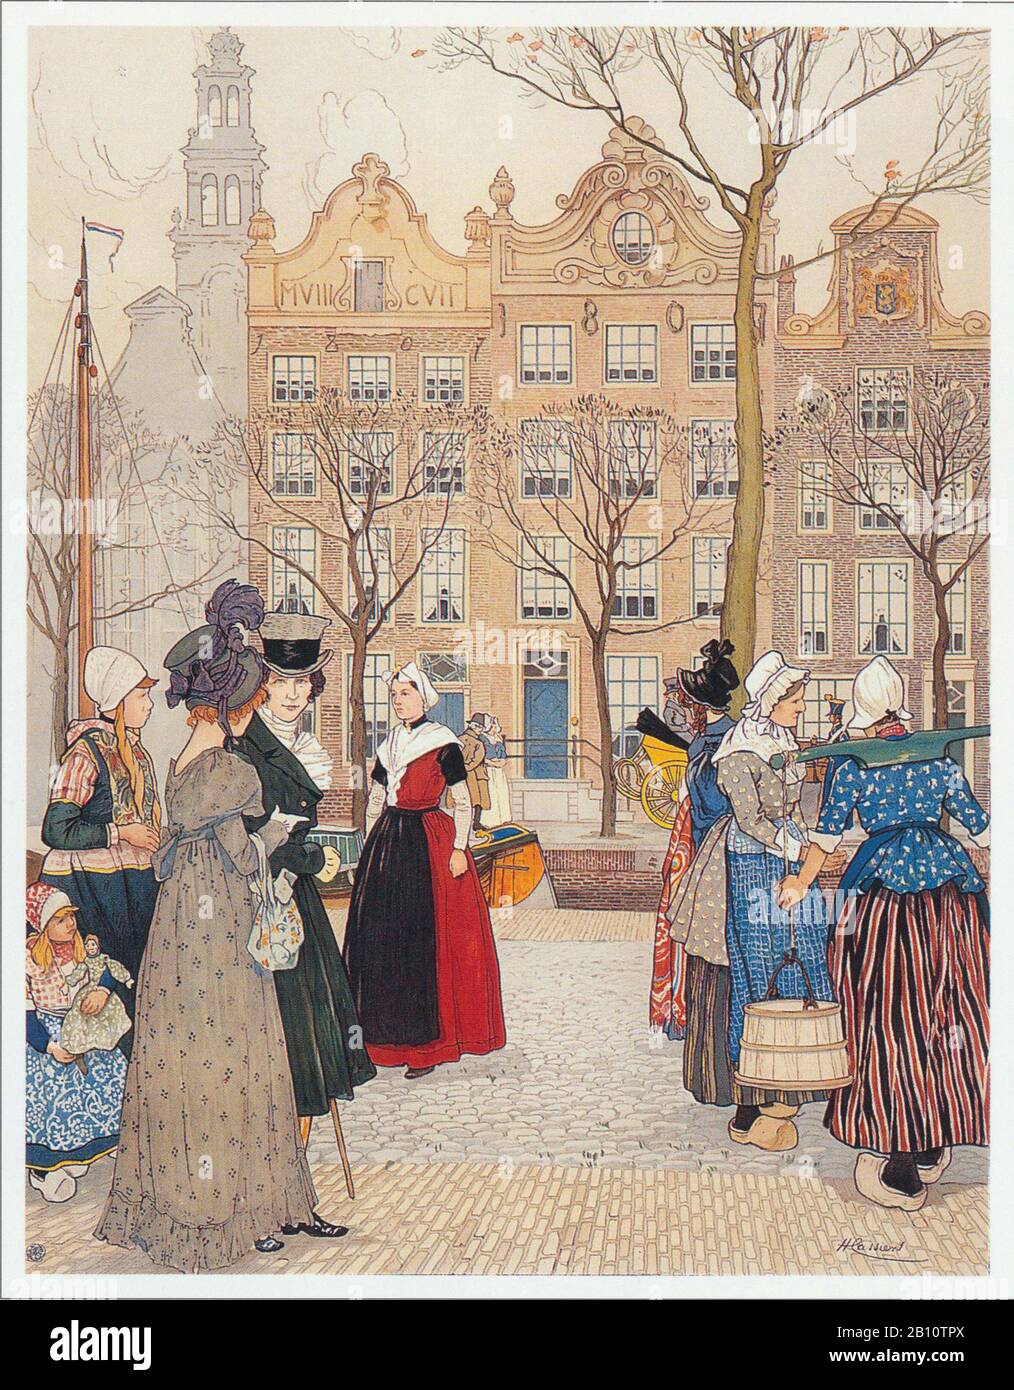 Amsterdam jordaan - Ilustración de Henri cassers (1858 - 1944) Foto de stock